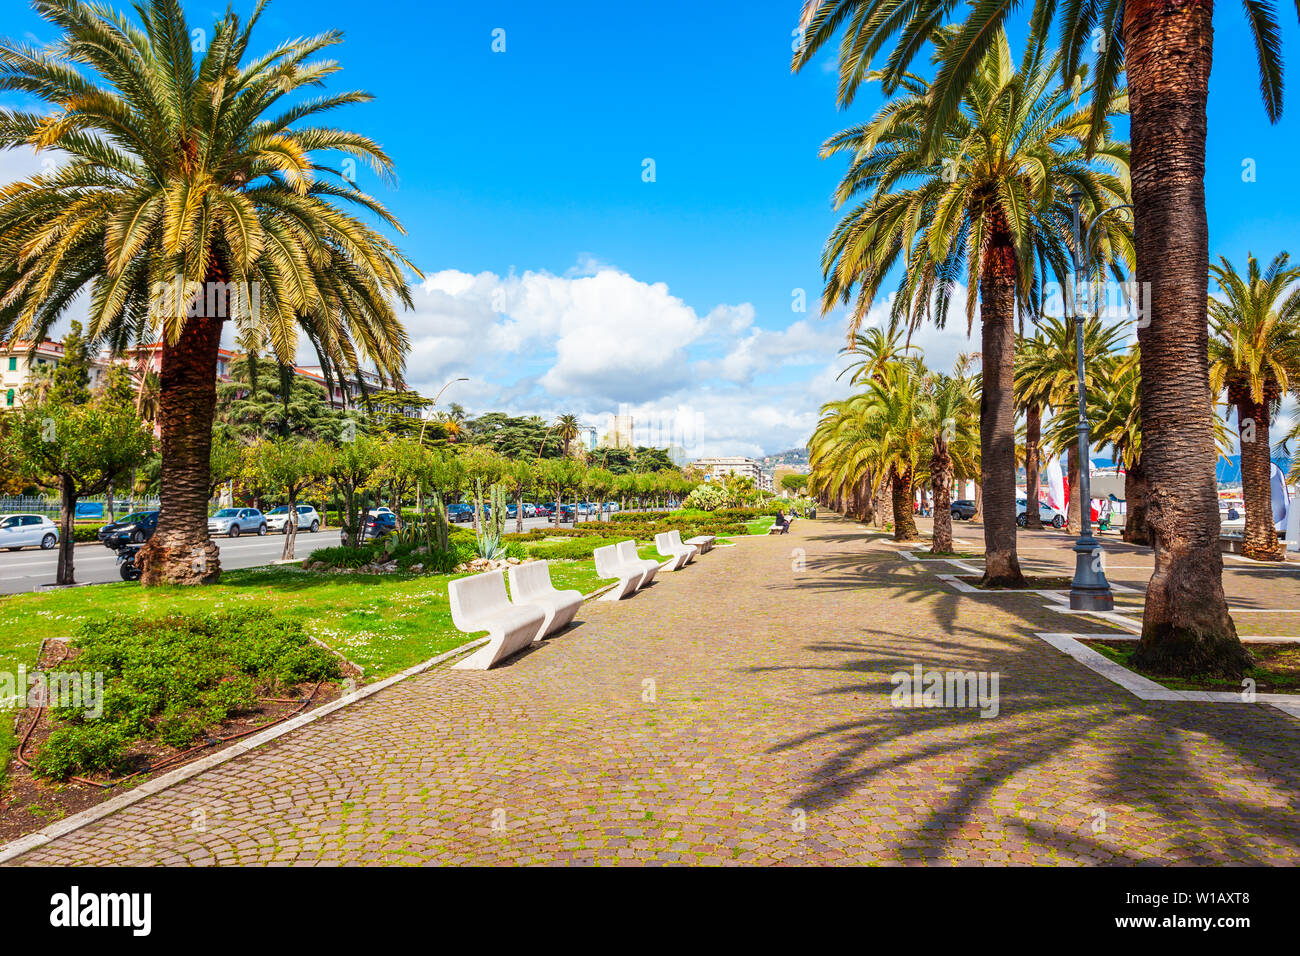 Promenade in the public park near the La Spezia city port, Liguria region of Italy Stock Photo